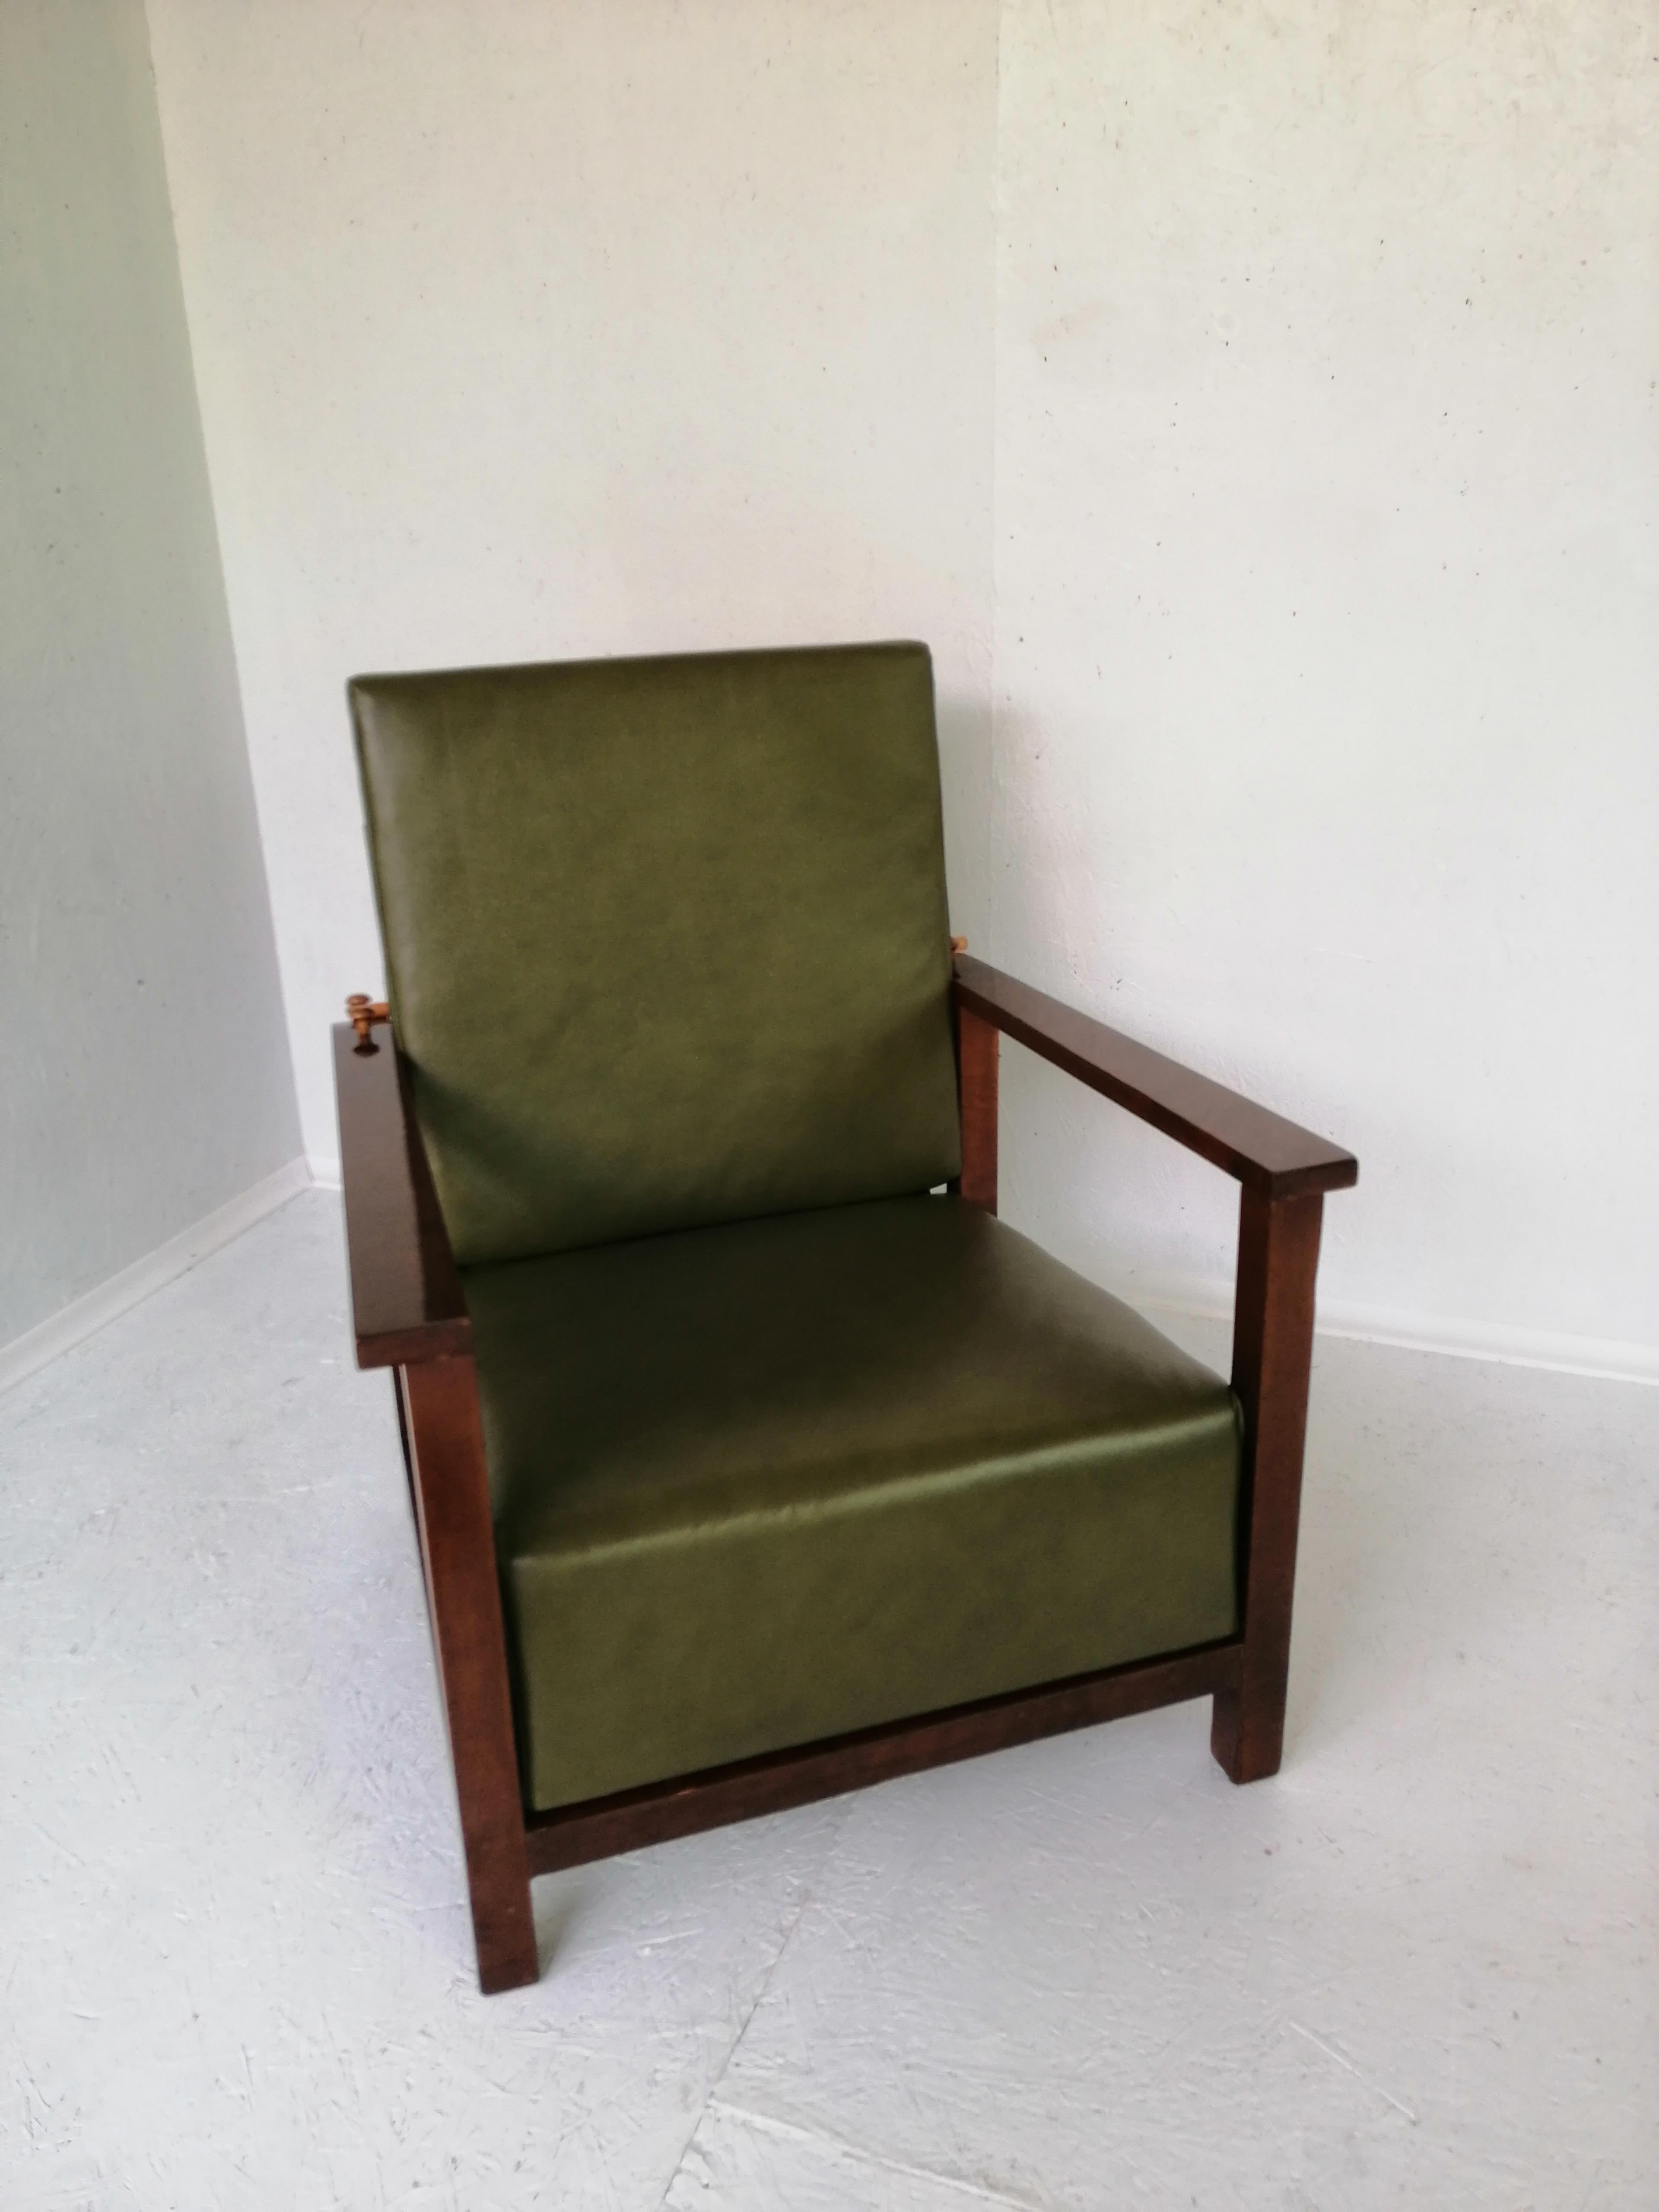 Art Deco Sessel Haut von 1930 Tschechische Republik.


Jedes Möbelstück, das unsere Werkstatt verlässt, wird von Anfang bis Ende einer manuellen Renovierung unterzogen, um den ursprünglichen Zustand von vor vielen Jahren wiederherzustellen (es